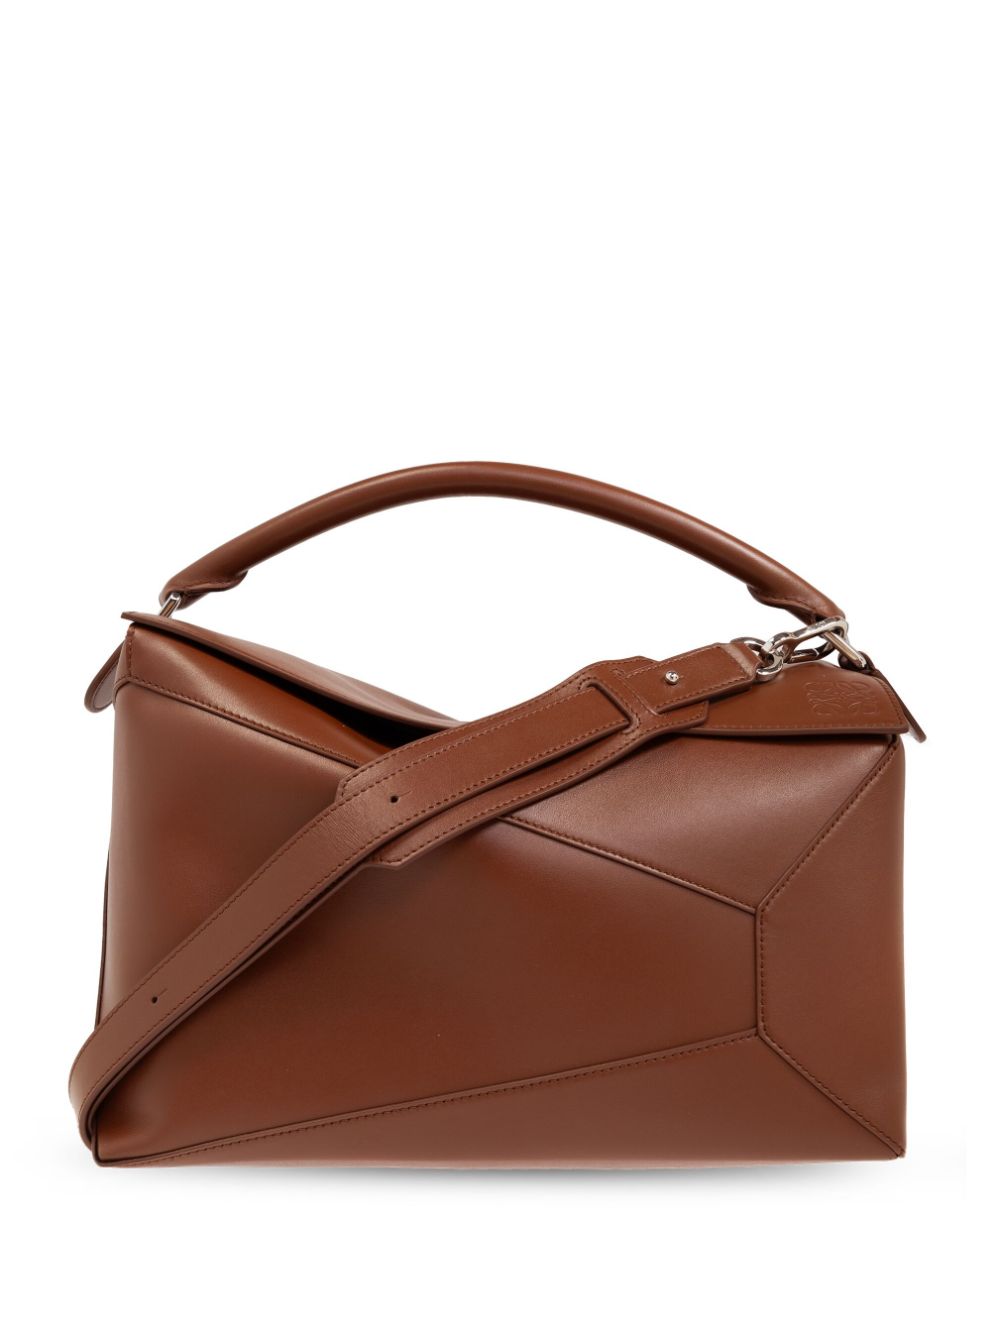 LOEWE large Puzzle leather tote bag - Brown von LOEWE